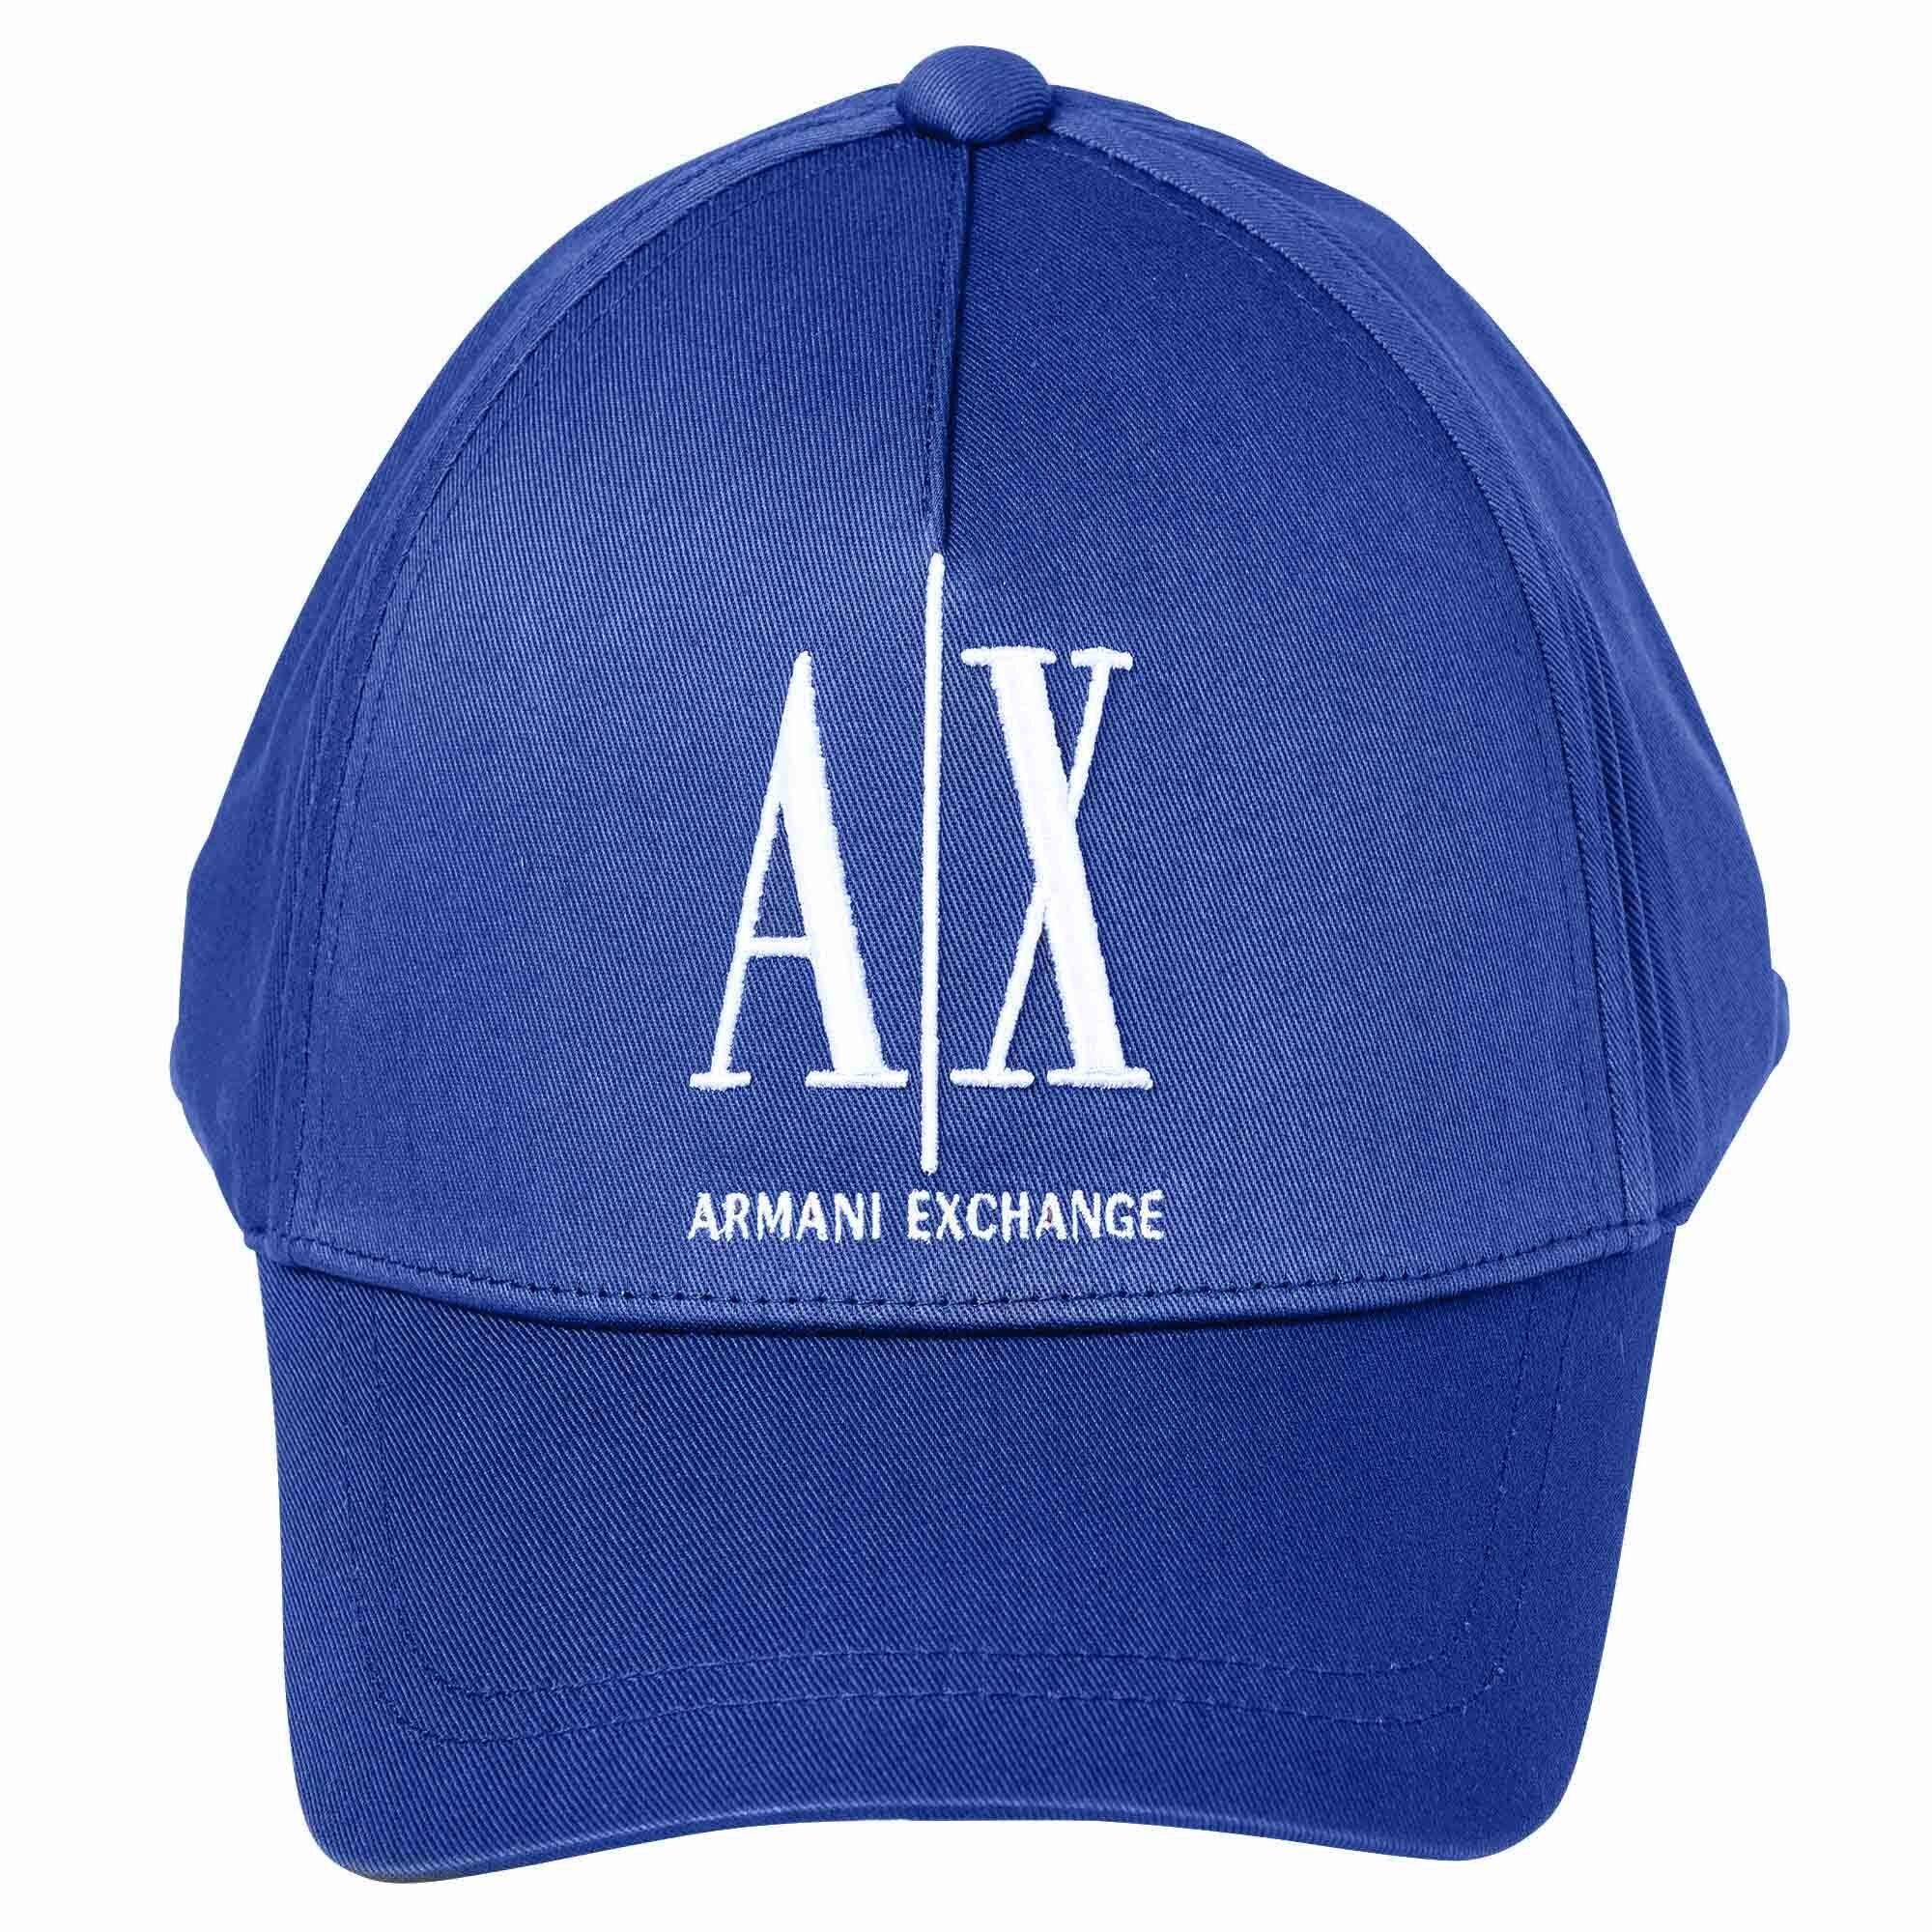 ARMANI EXCHANGE Baseball Cap Unisex Baseball Cap - Kappe, Logo, One Size Mittelblau